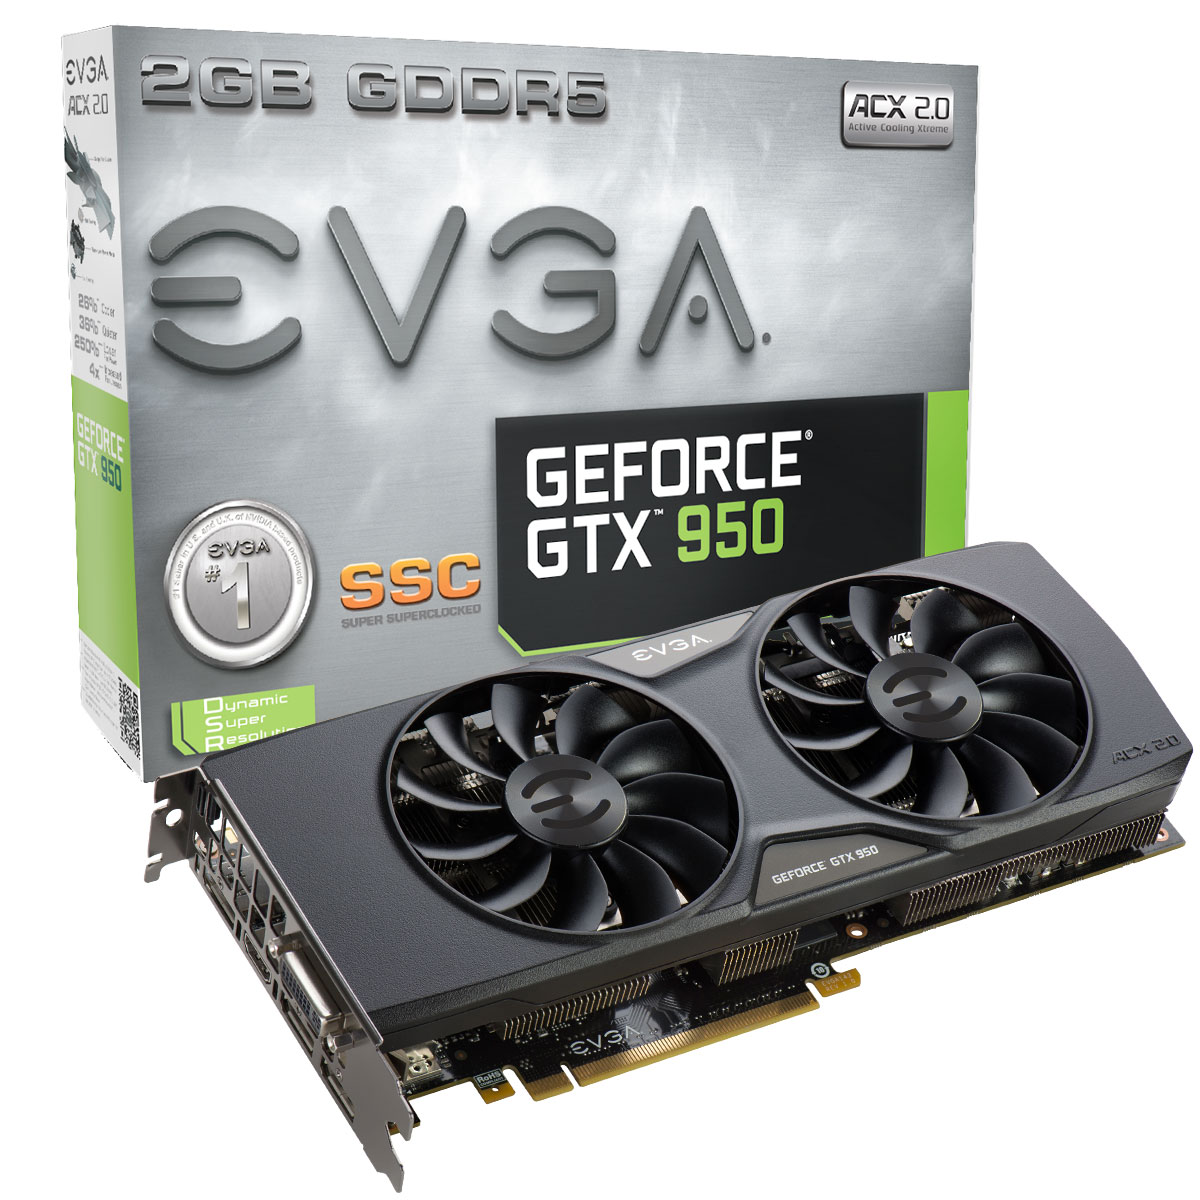 Lion Advertiser To separate EVGA - Articles - EVGA GeForce GTX 950